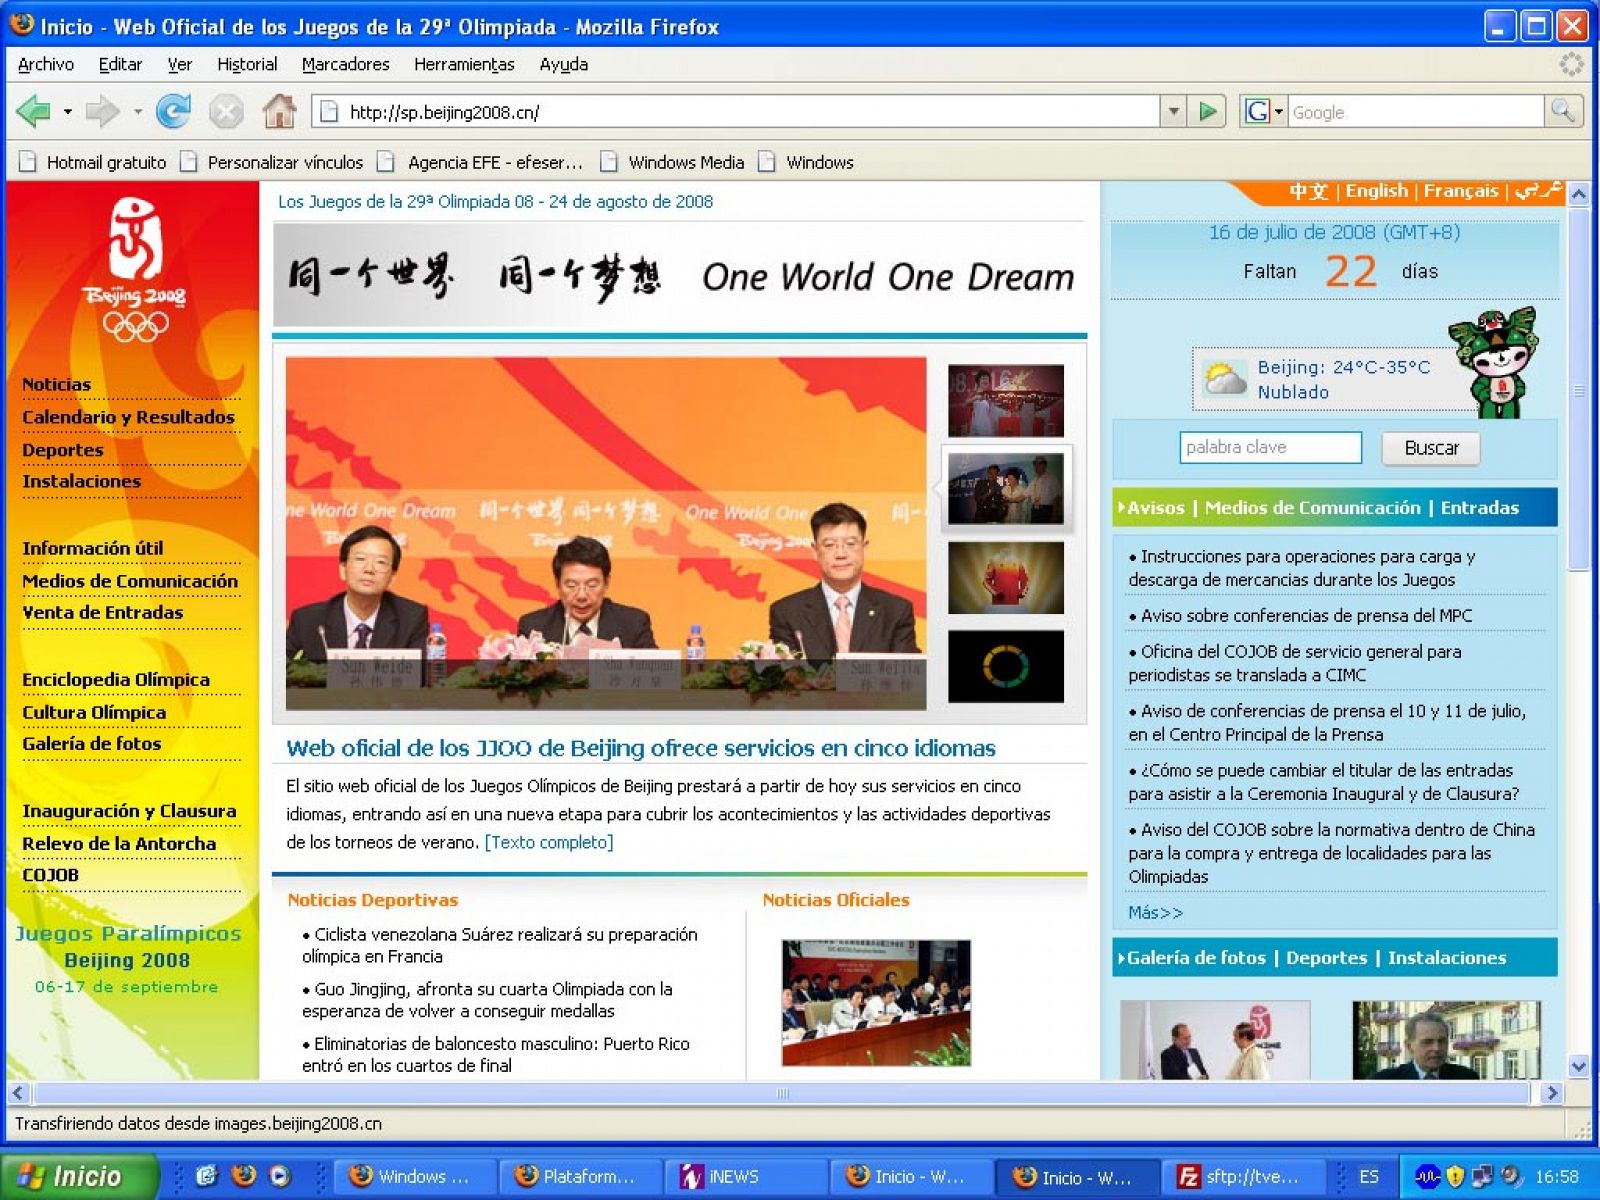 Web oficial de Pekin 2008